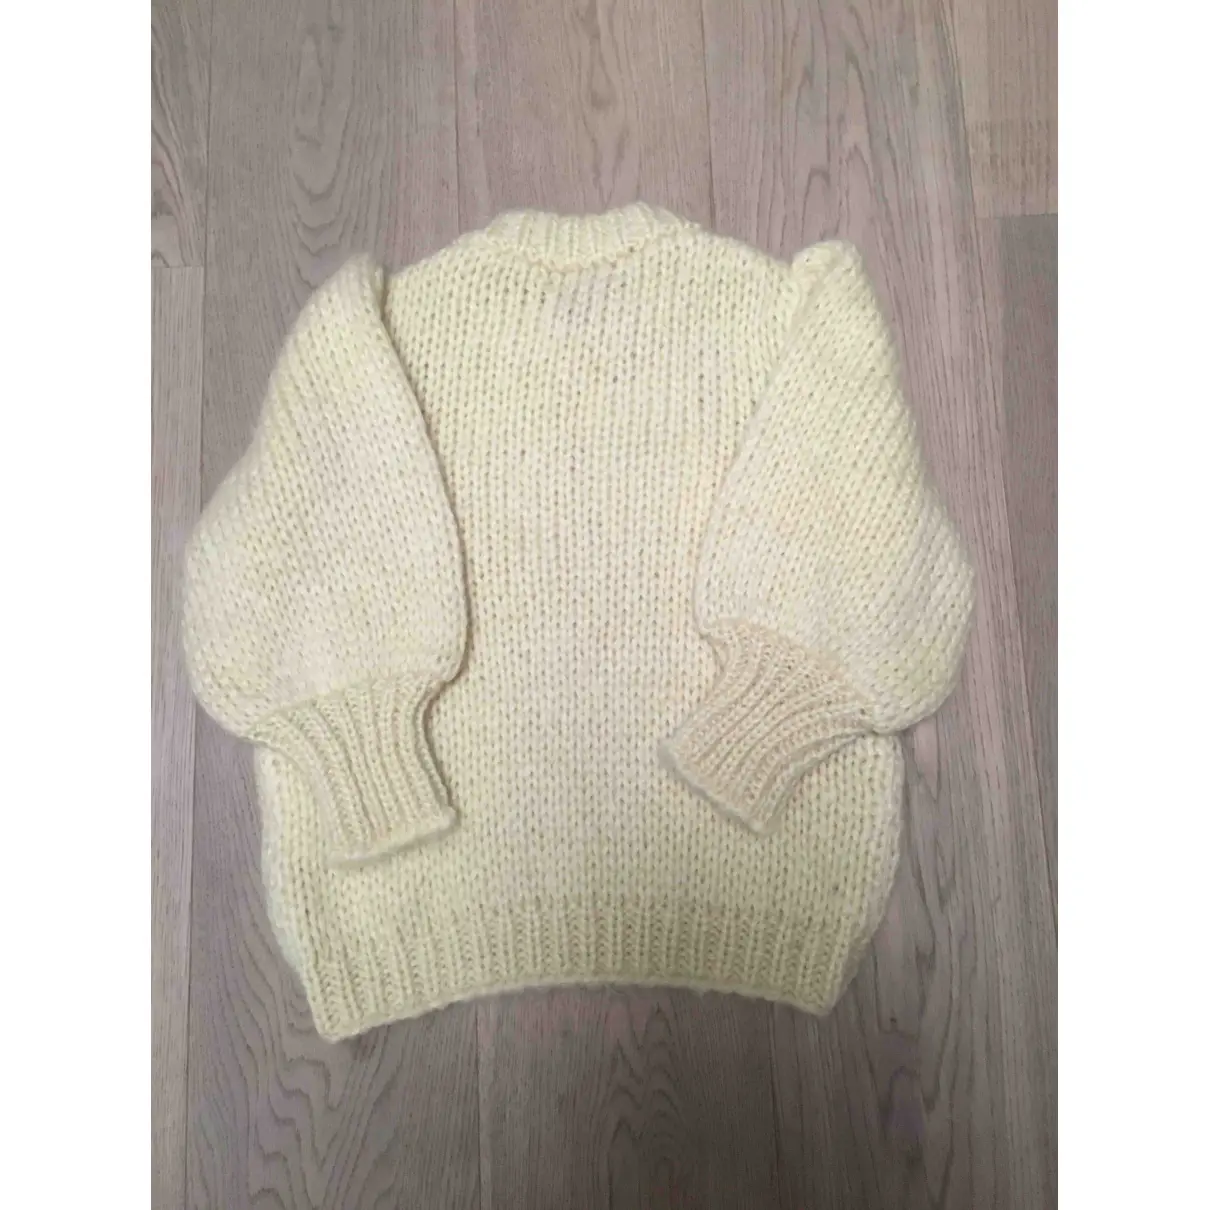 Buy Ganni Fall Winter 2019 wool knitwear online